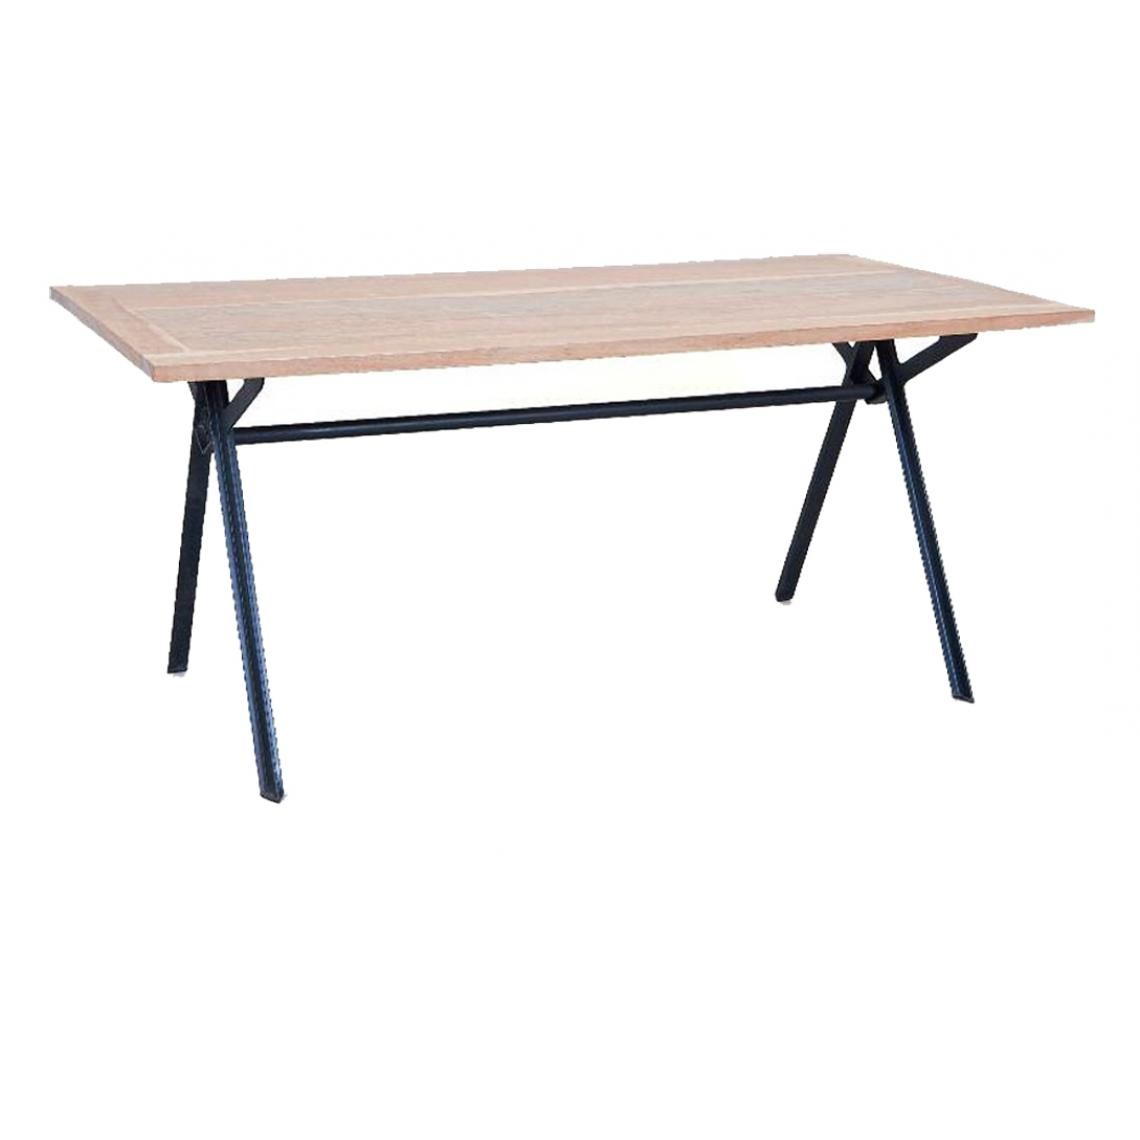 Pegane - Table en Acacia coloris brun/noir, 180 x 90 x 76 cm - Tables à manger